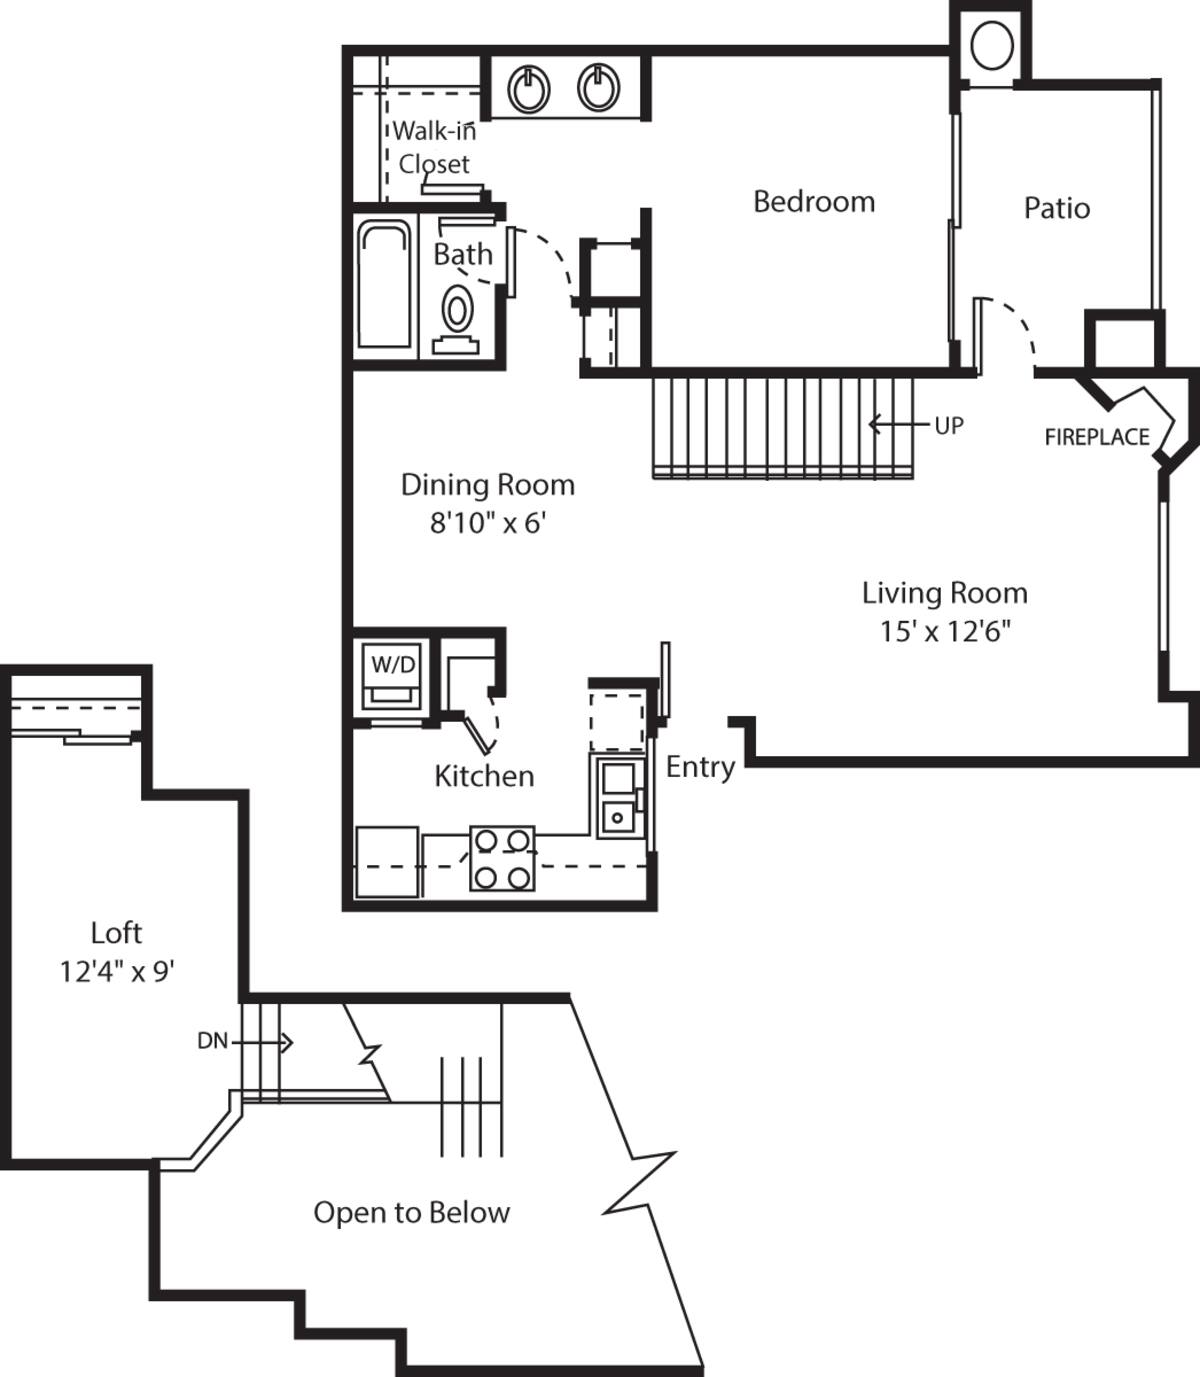 Floorplan diagram for Cortona, showing 1 bedroom